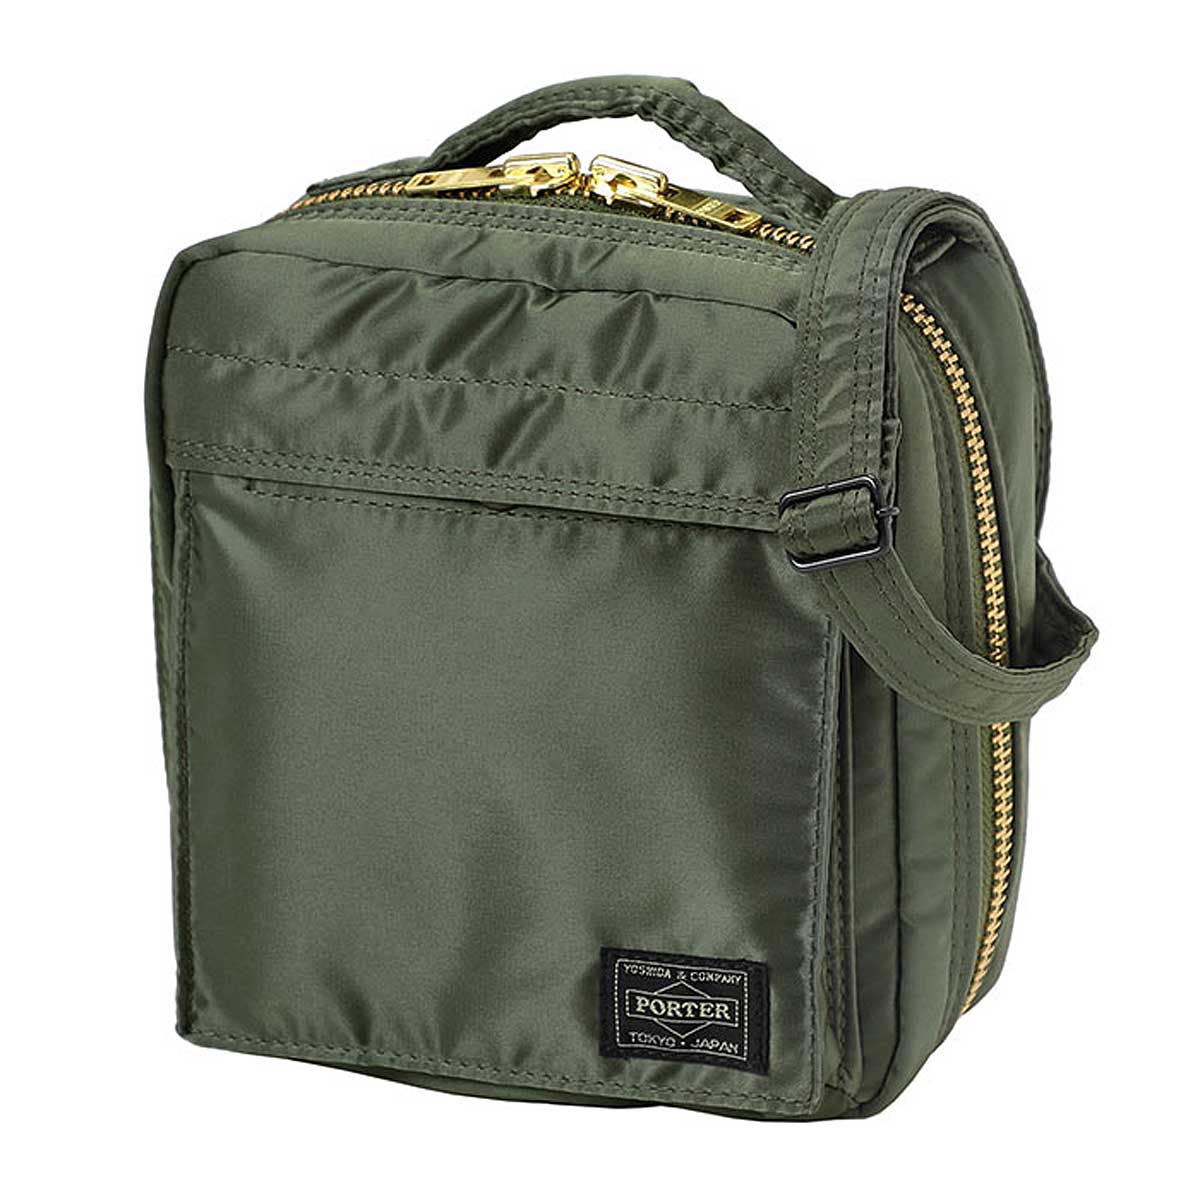 Porter Yoshida & Co Tanker Shoulder Bag, Sage Green/Green